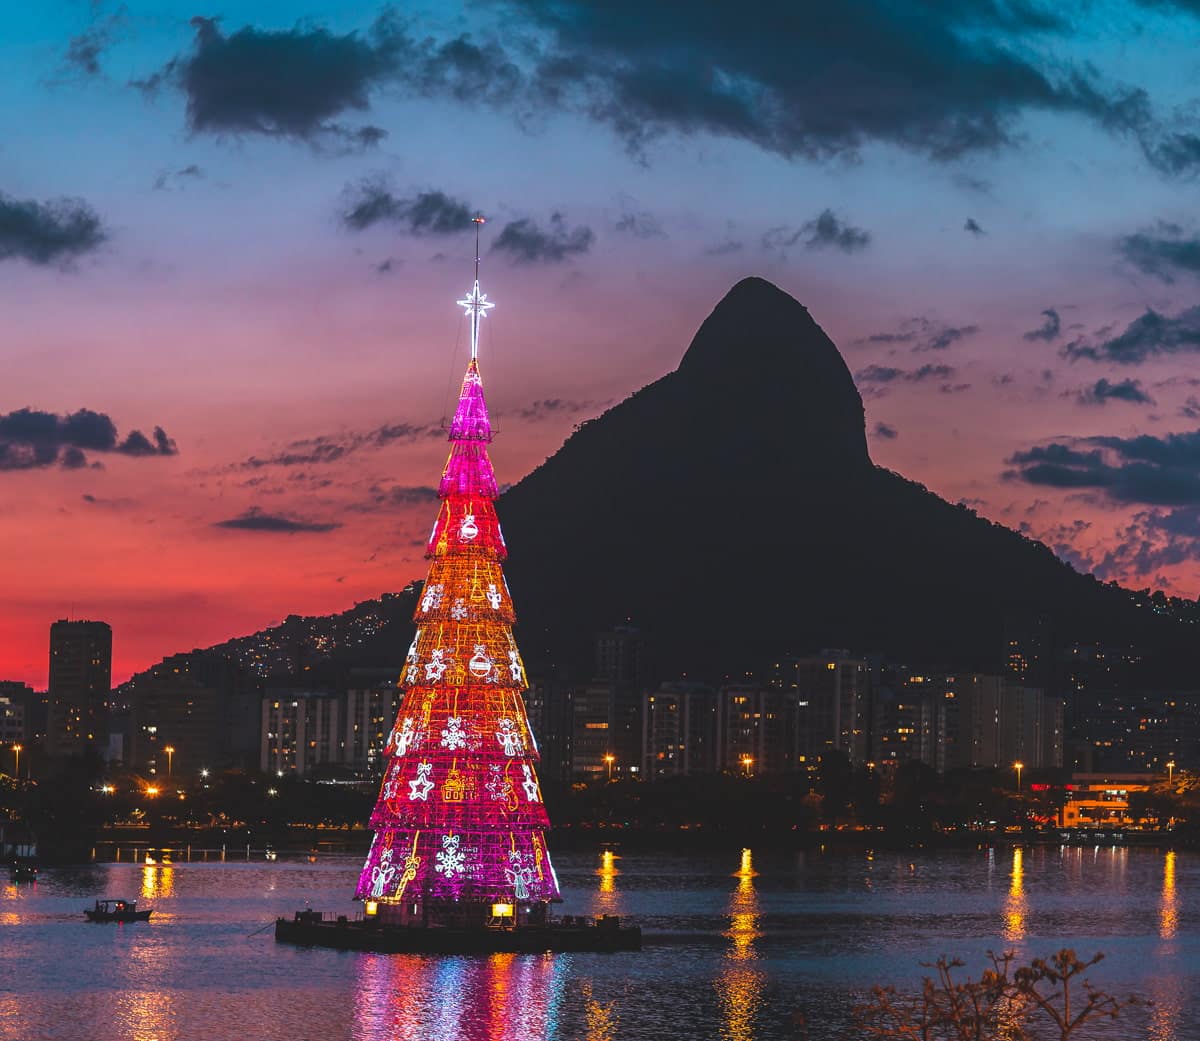 Rio de Janeiro for Christmas